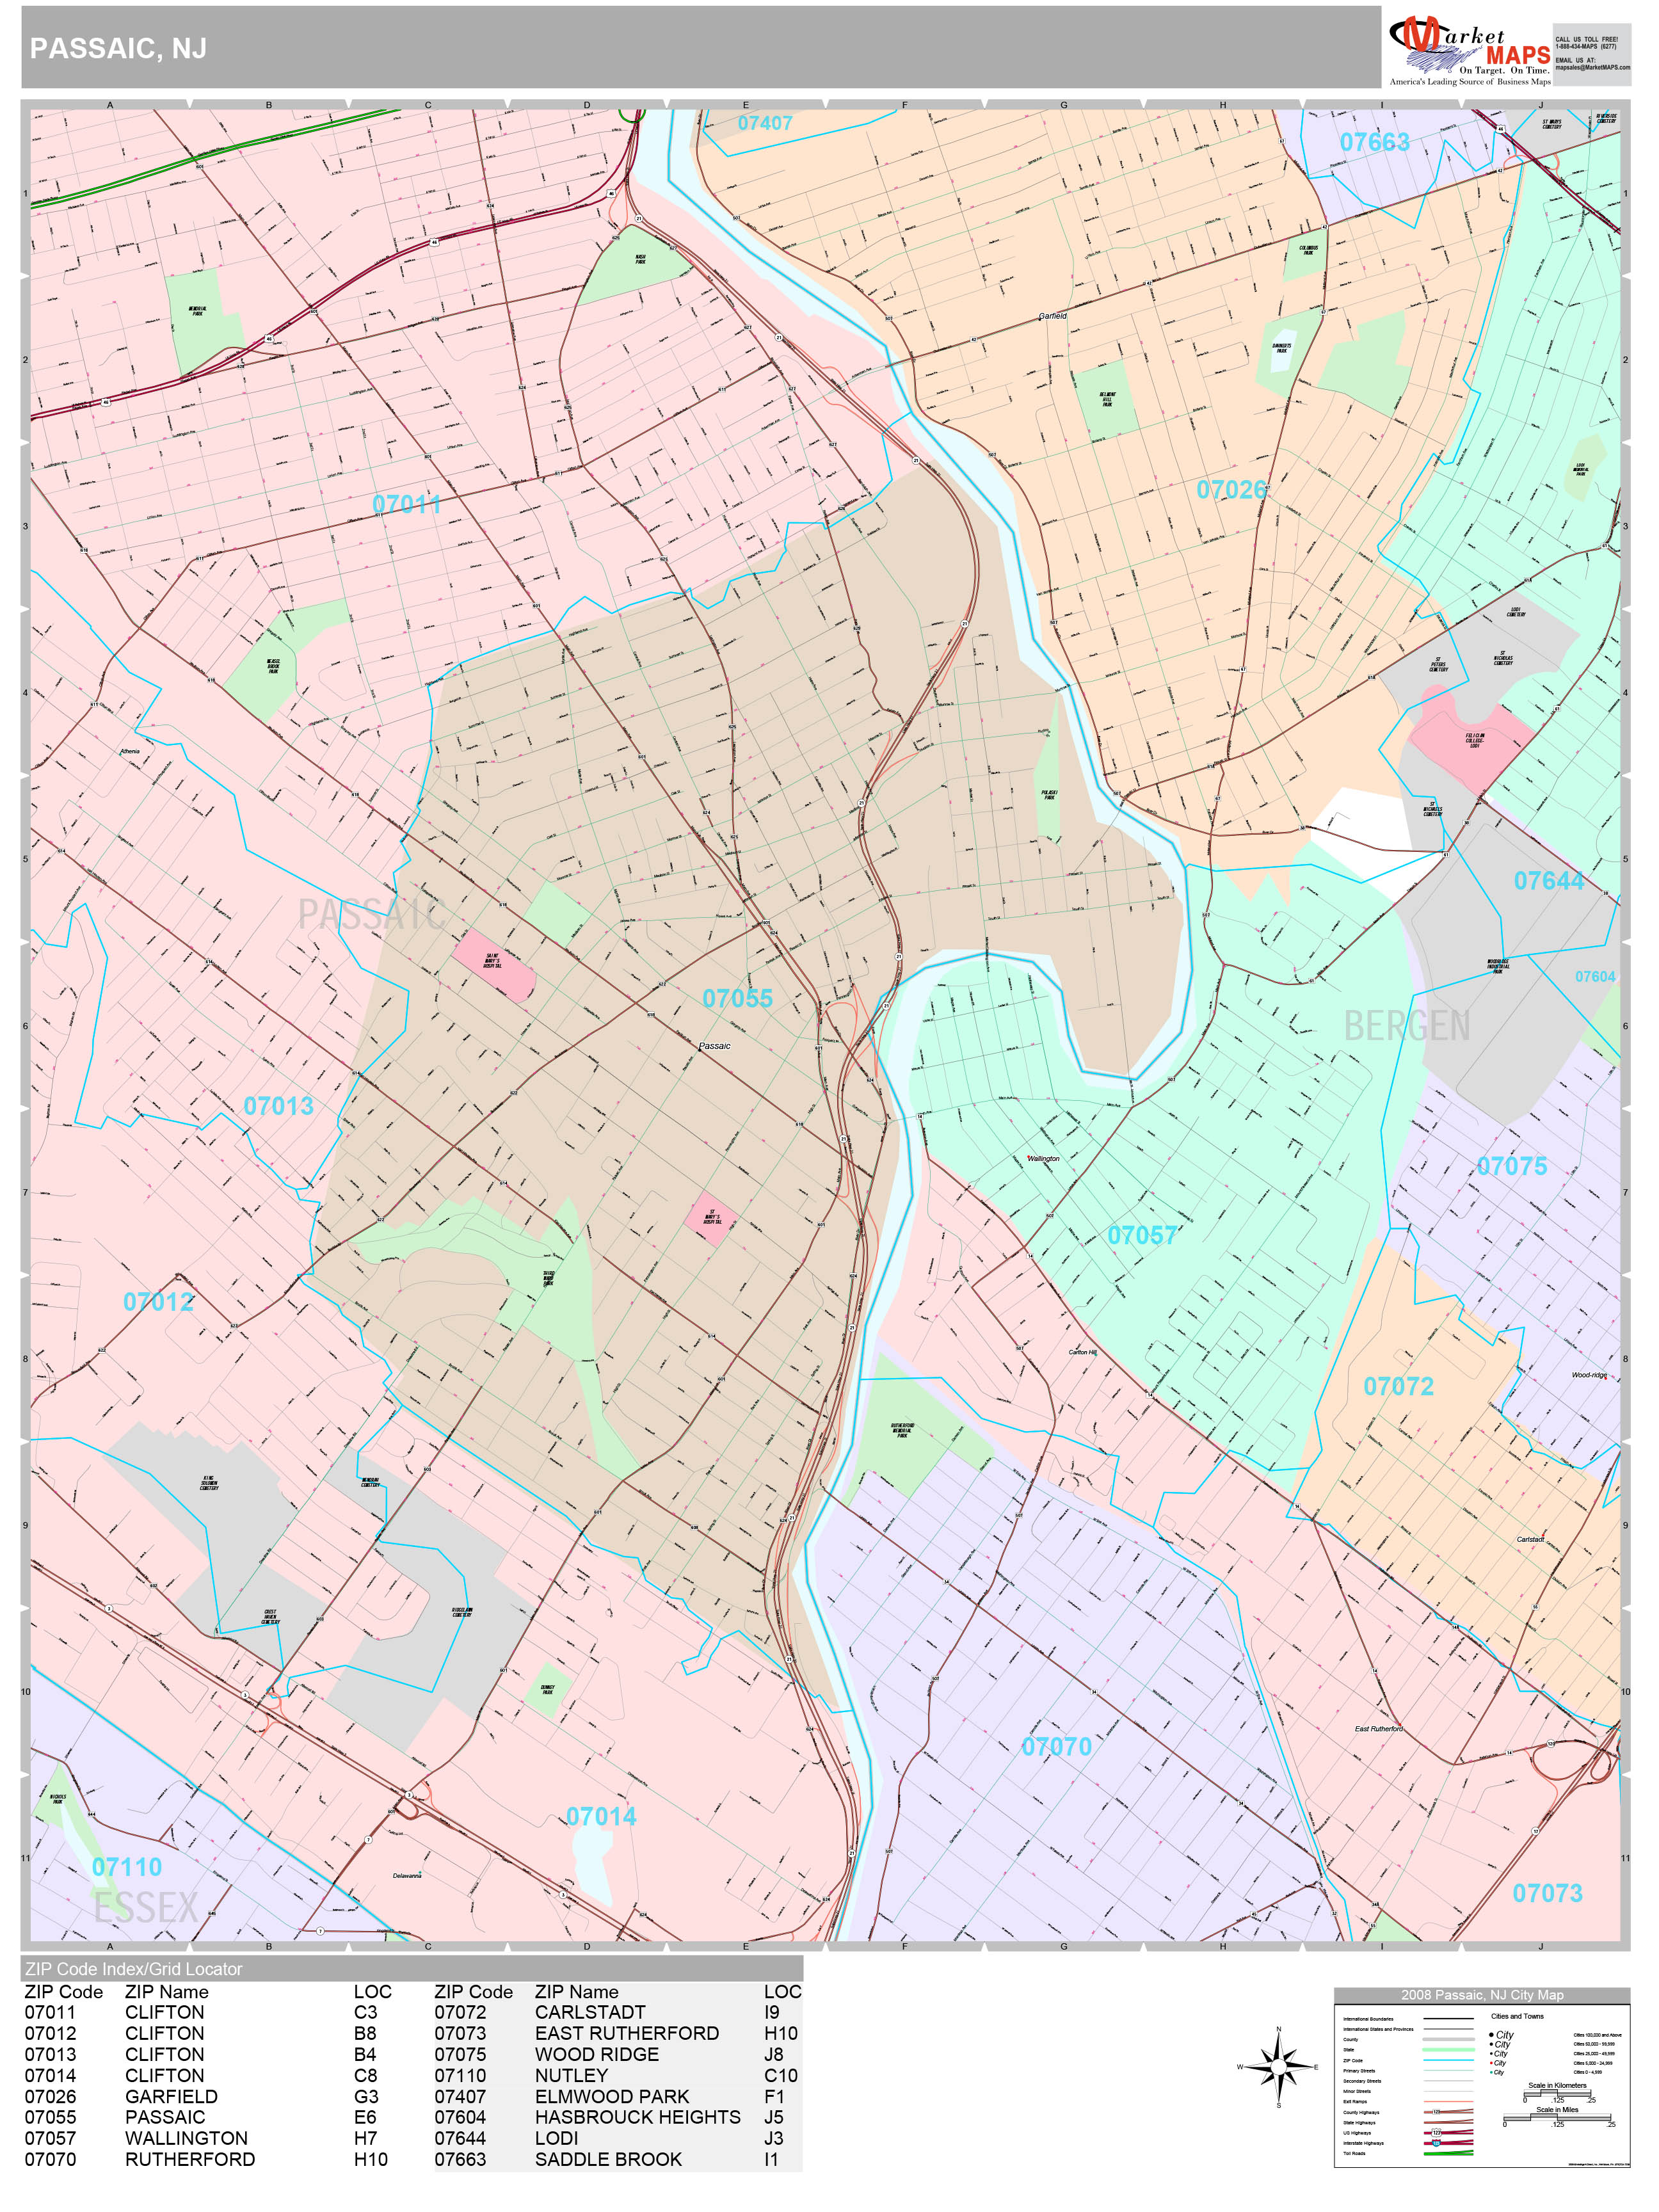 Passaic New Jersey Wall Map Premium Style By Marketmaps Mapsales 2865